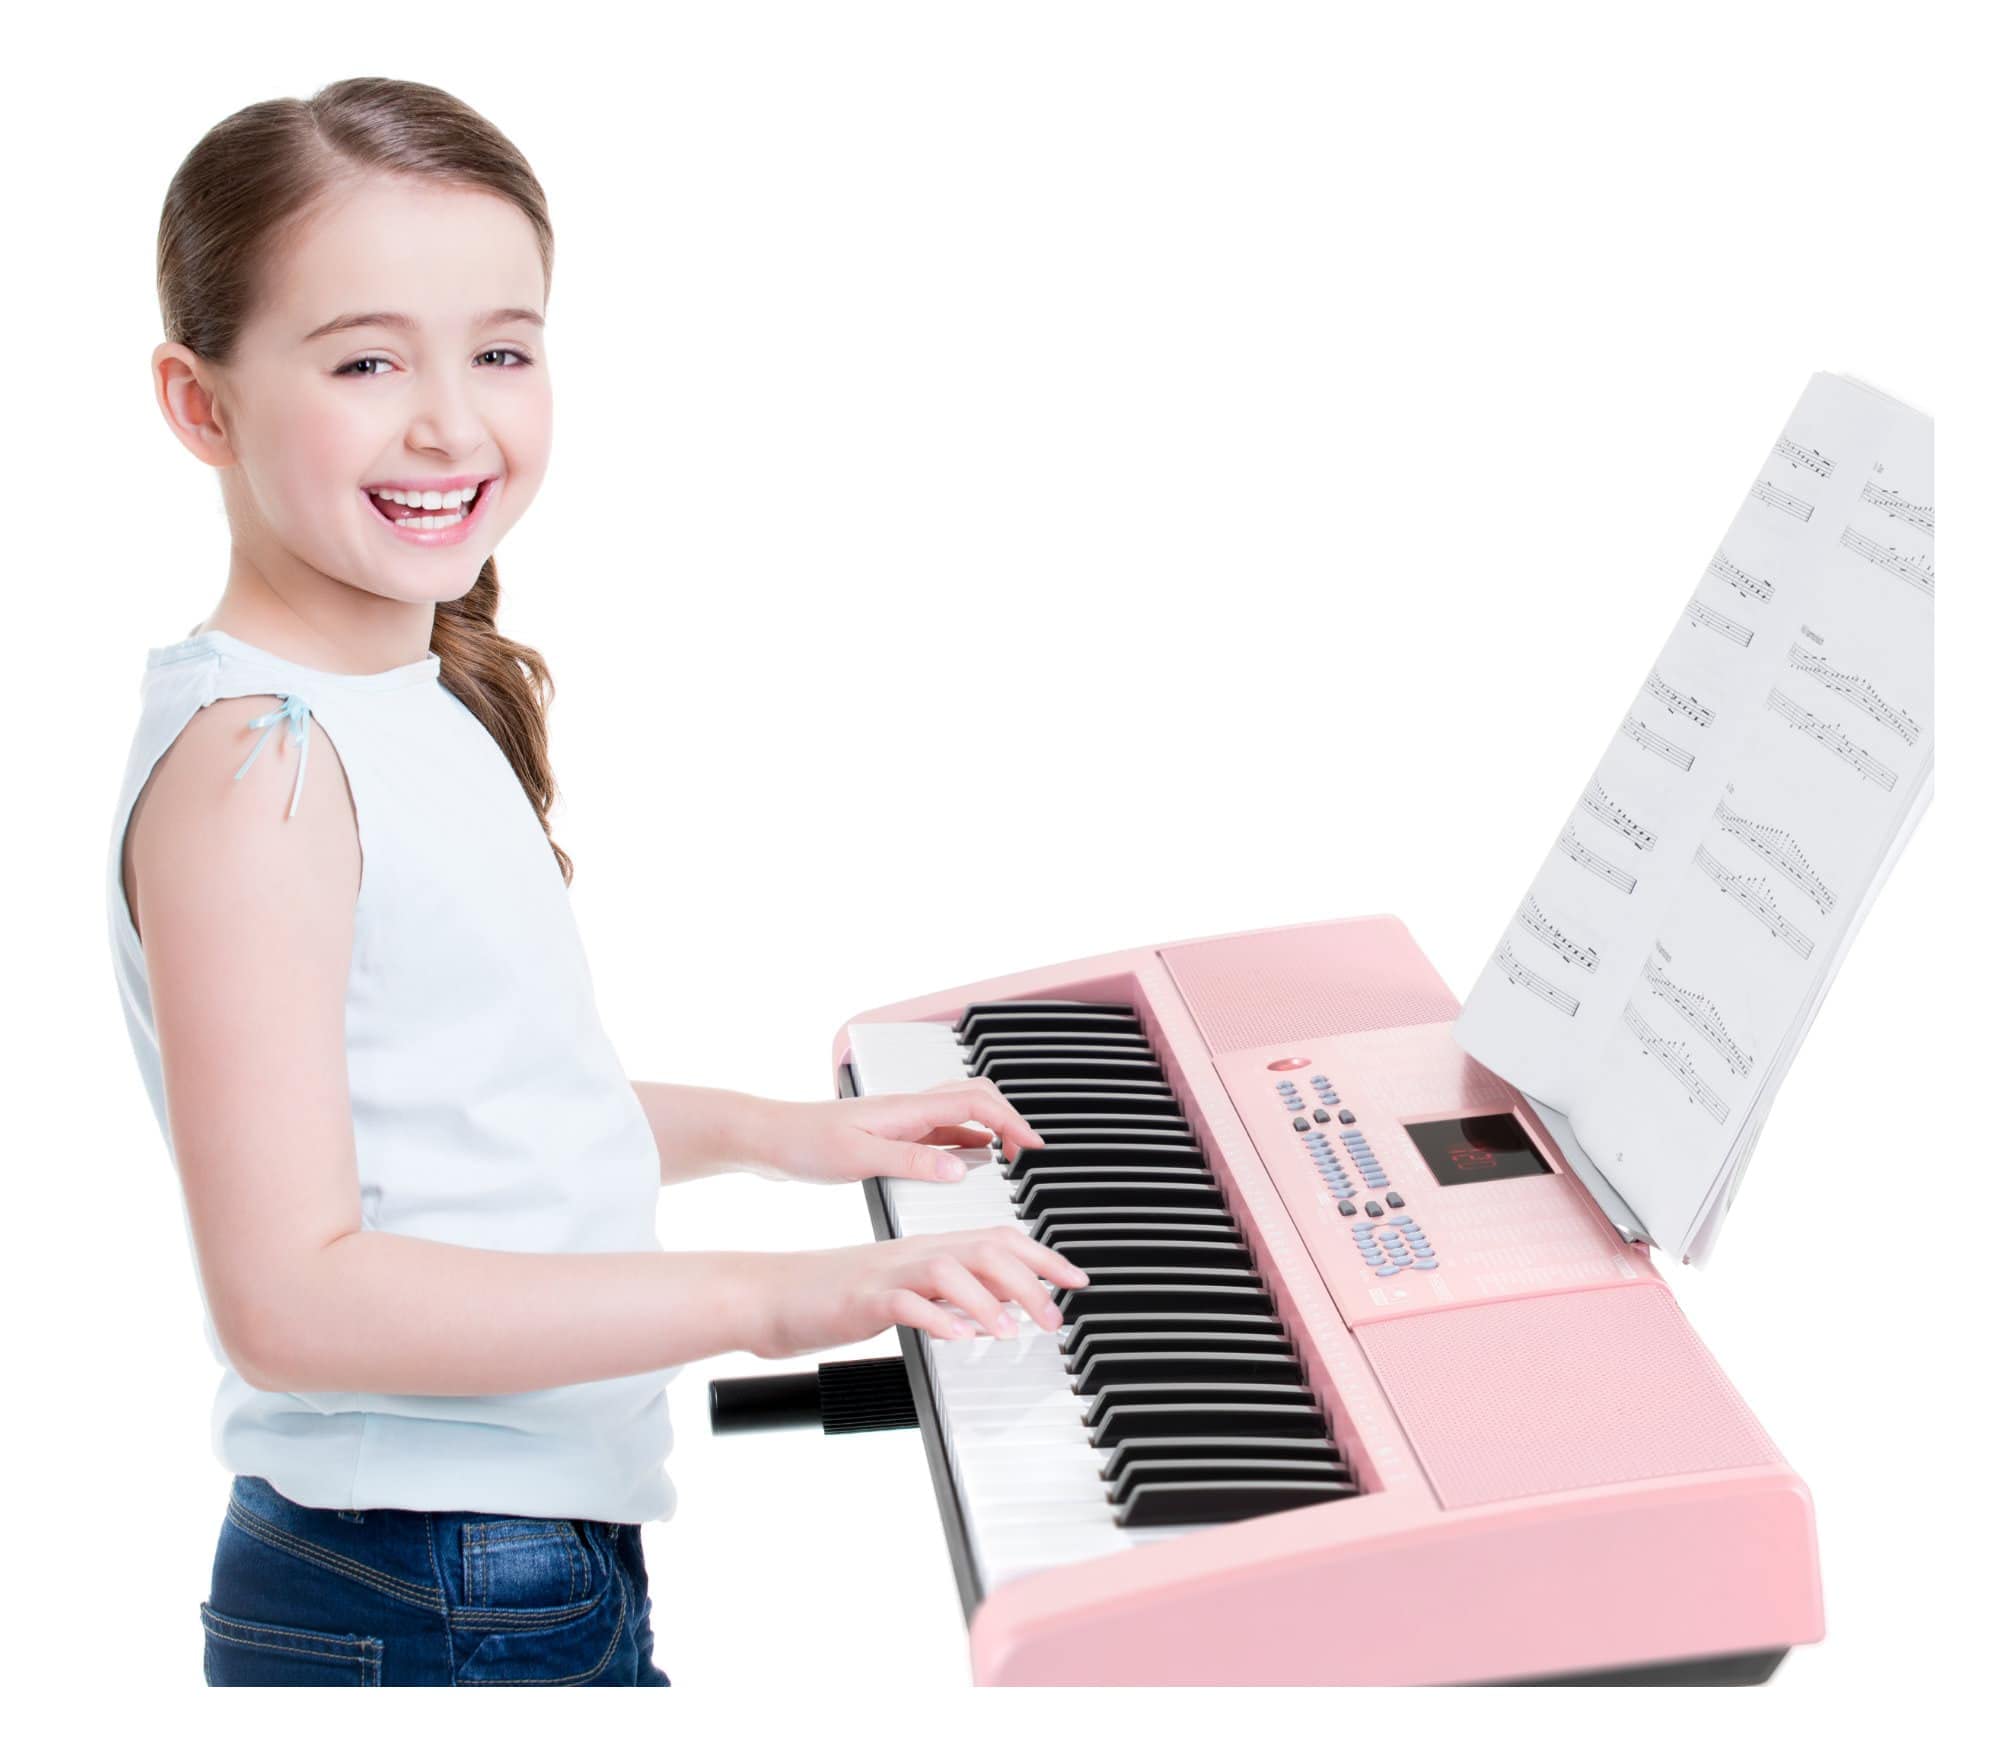 McGrey LK-6120-MIC Keyboard Set - Einsteiger-Keyboard mit 61 Leuchttasten - 255 Sounds und 255 Rhythmen - 50 Demo Songs - Inklusive Mikrofon - Spar-Set inkl. X-Keyboardständer und Kopfhörer - Pink